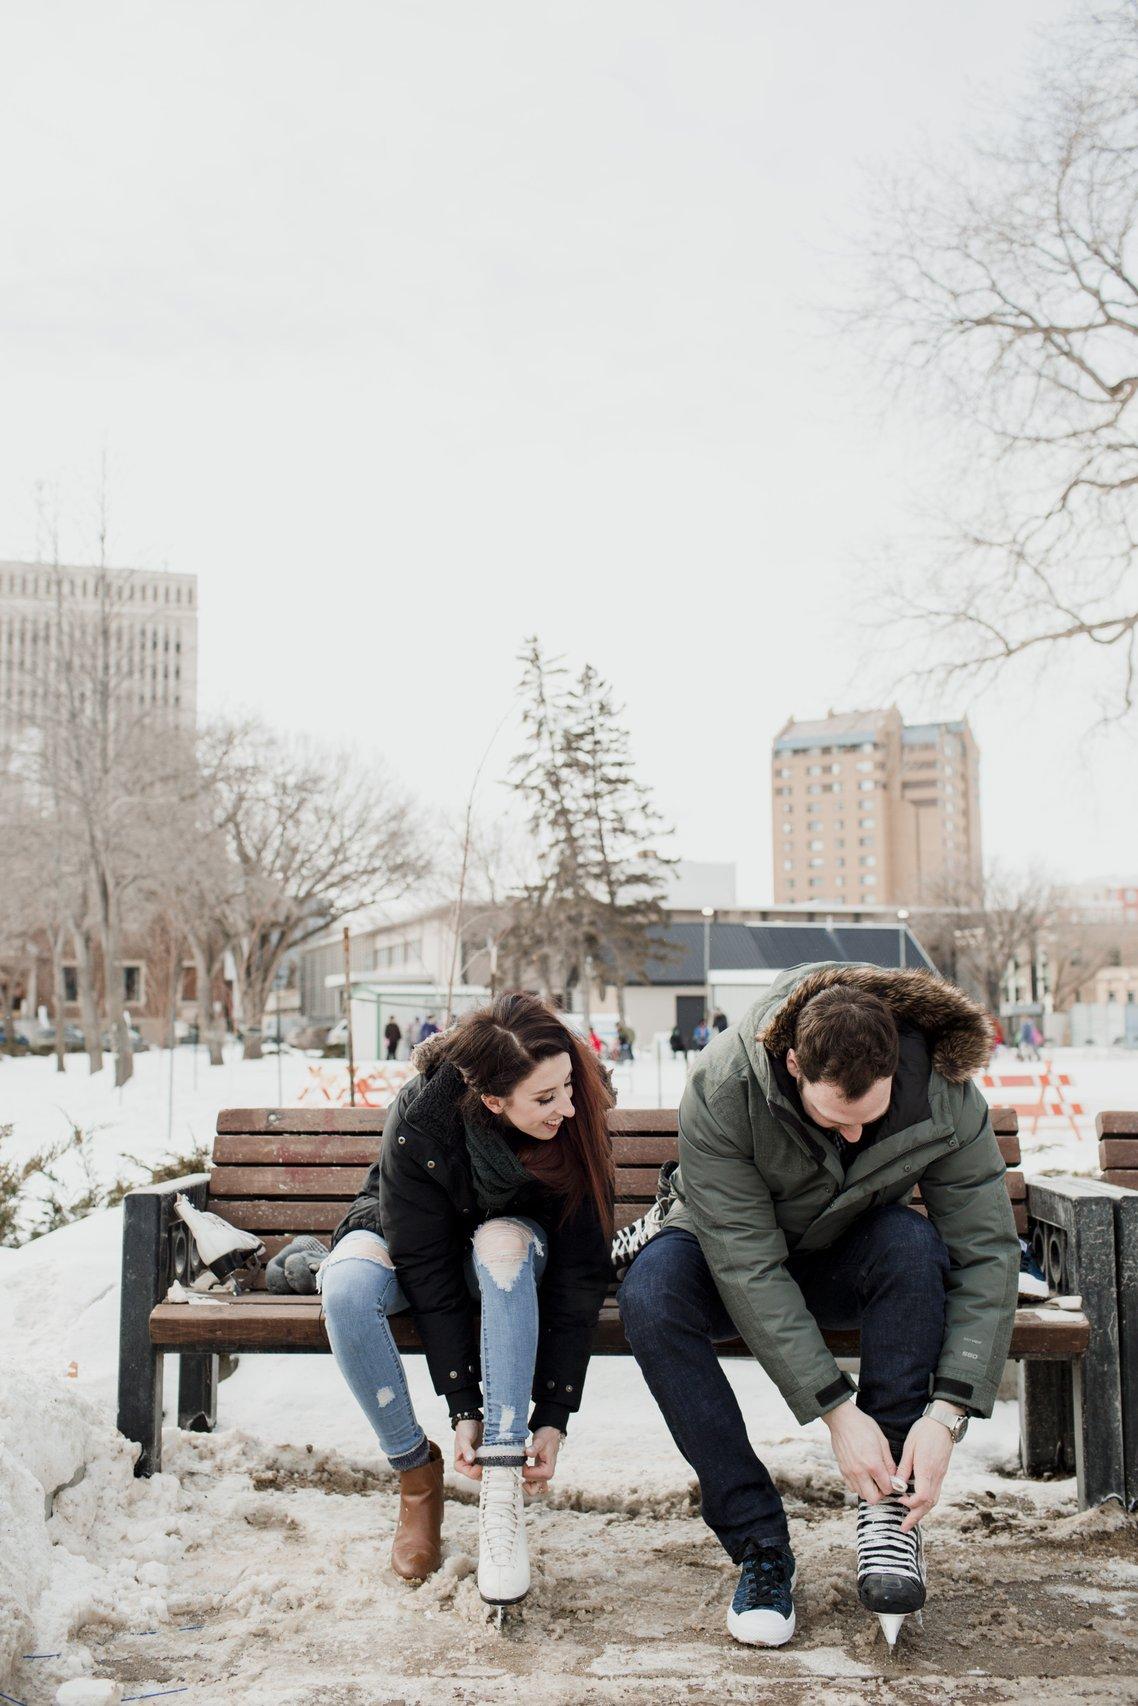 Save for couples winter pose inspo! What should i do next? 🤔 #poses #... |  TikTok